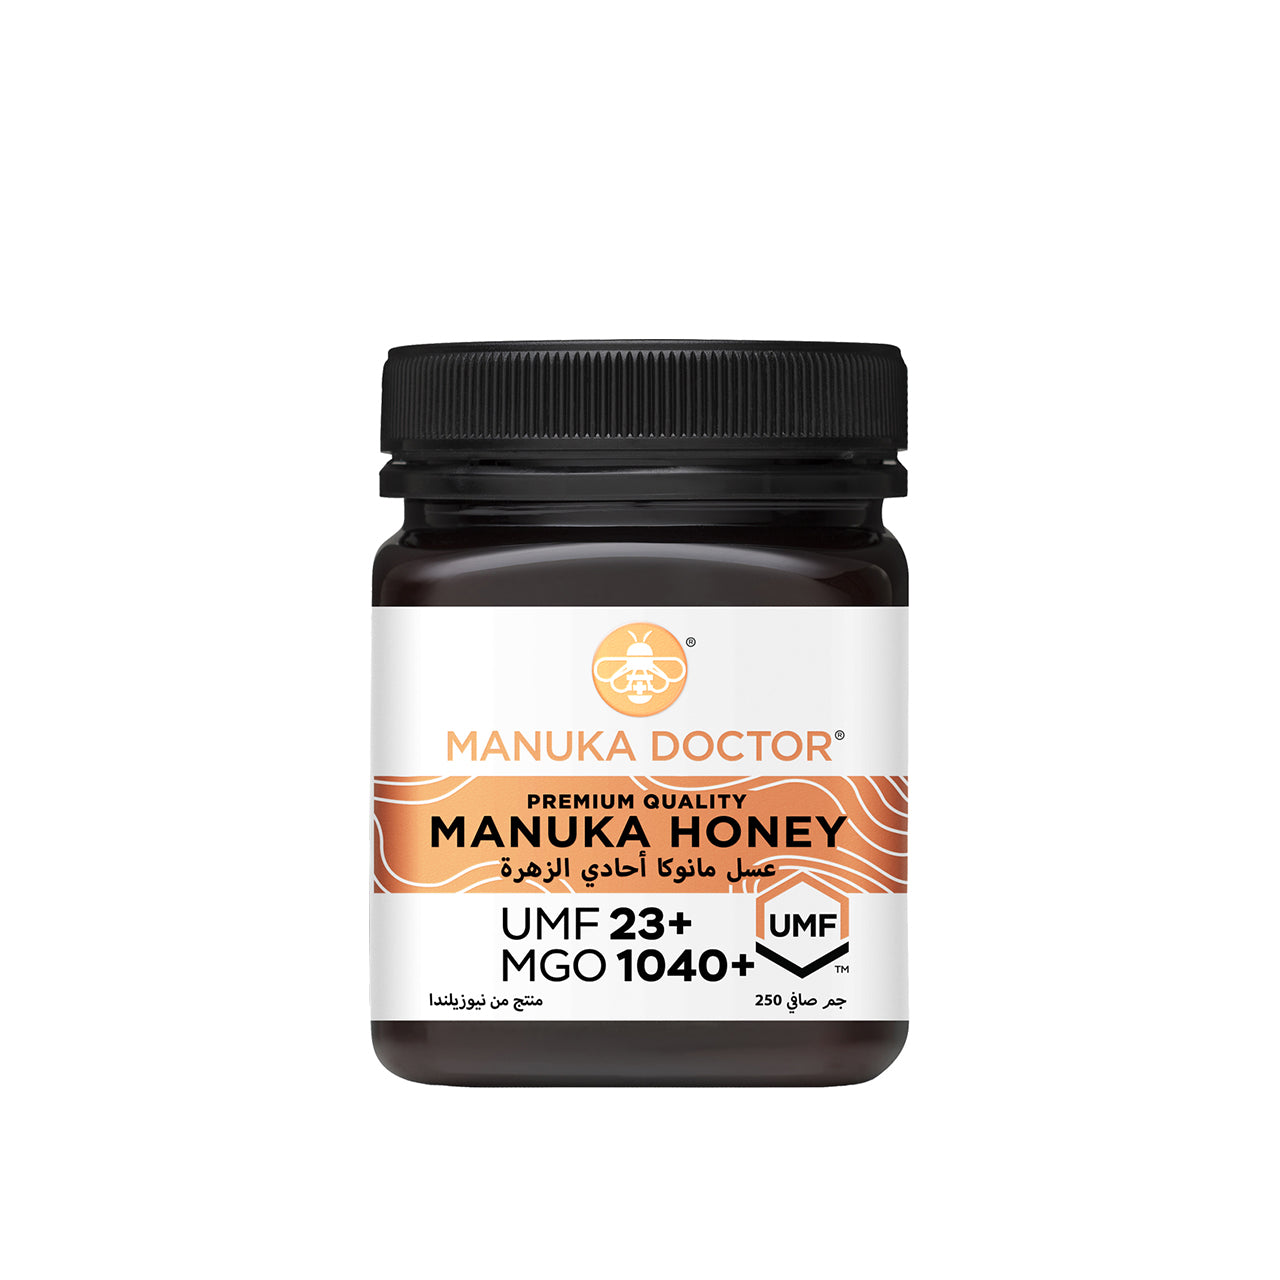 Manuka Doctor Manuka Honey UMF 23+ MGO 1040+